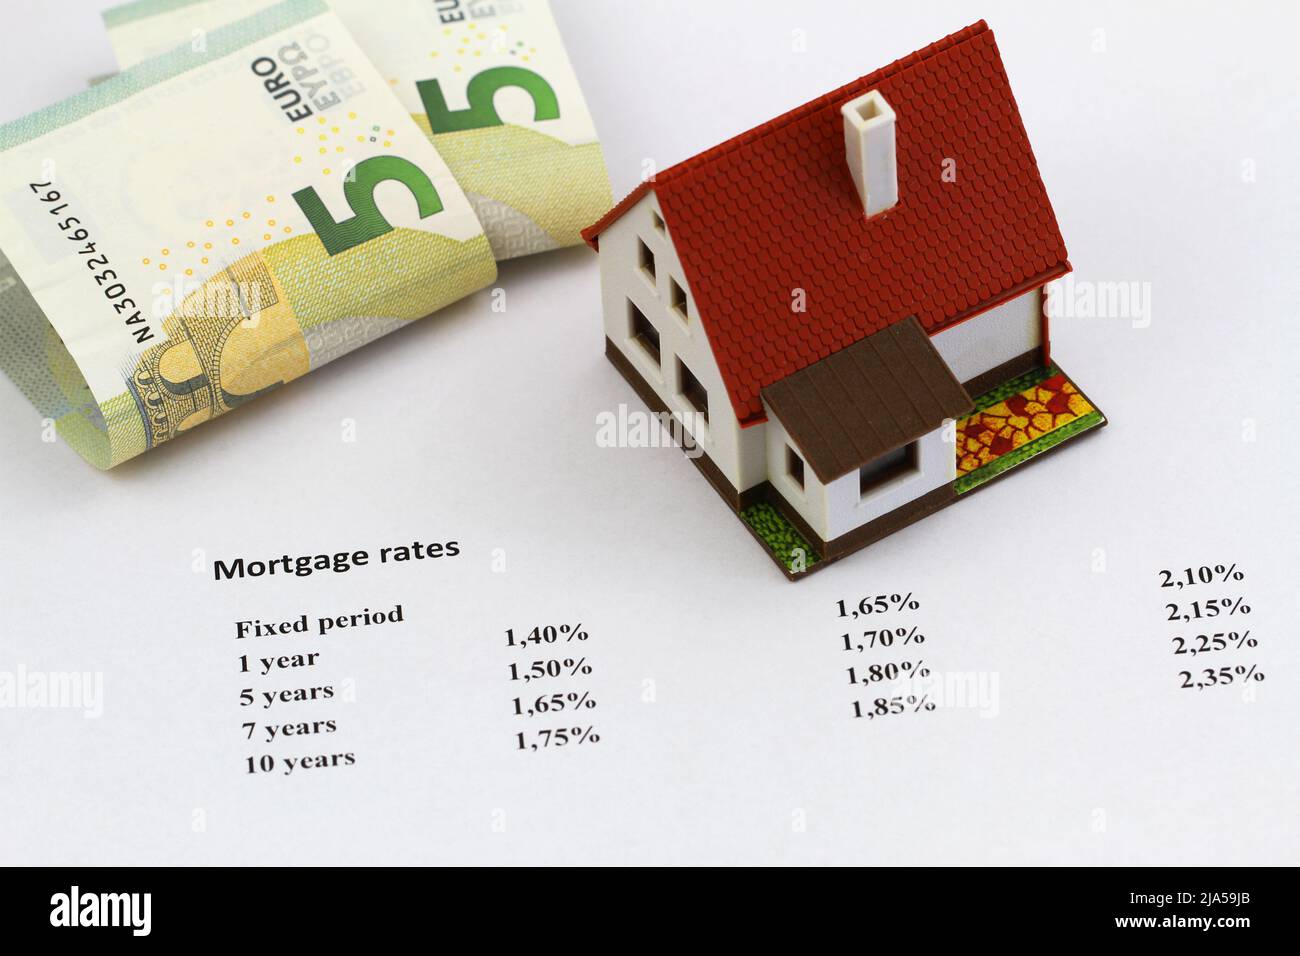 Tasas hipotecarias escritas en papel blanco con modelos de casa y billetes en euros Foto de stock